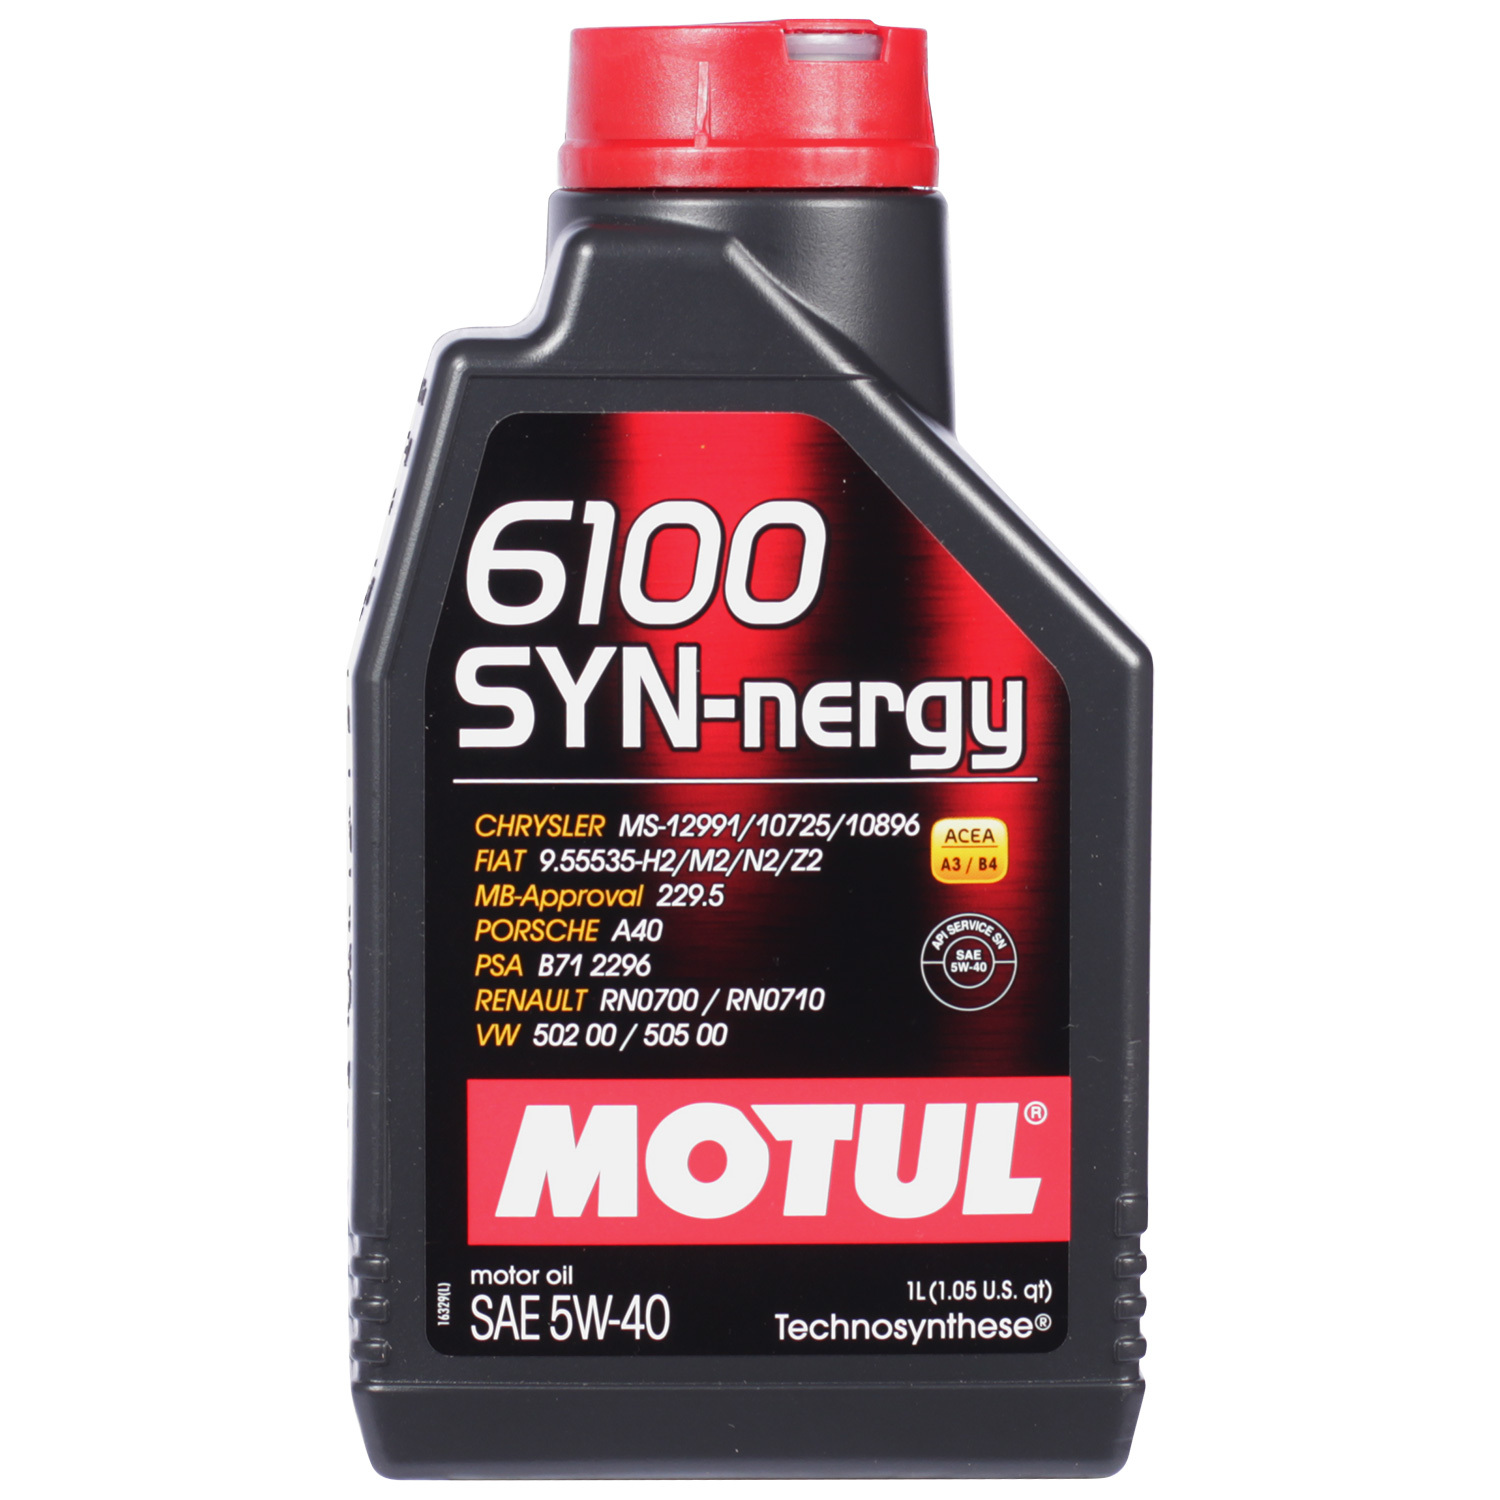 Motul Моторное масло Motul 6100 SYN-NERGY 5W-40, 1 л motul моторное масло motul 6100 synergie 5w 30 4 л